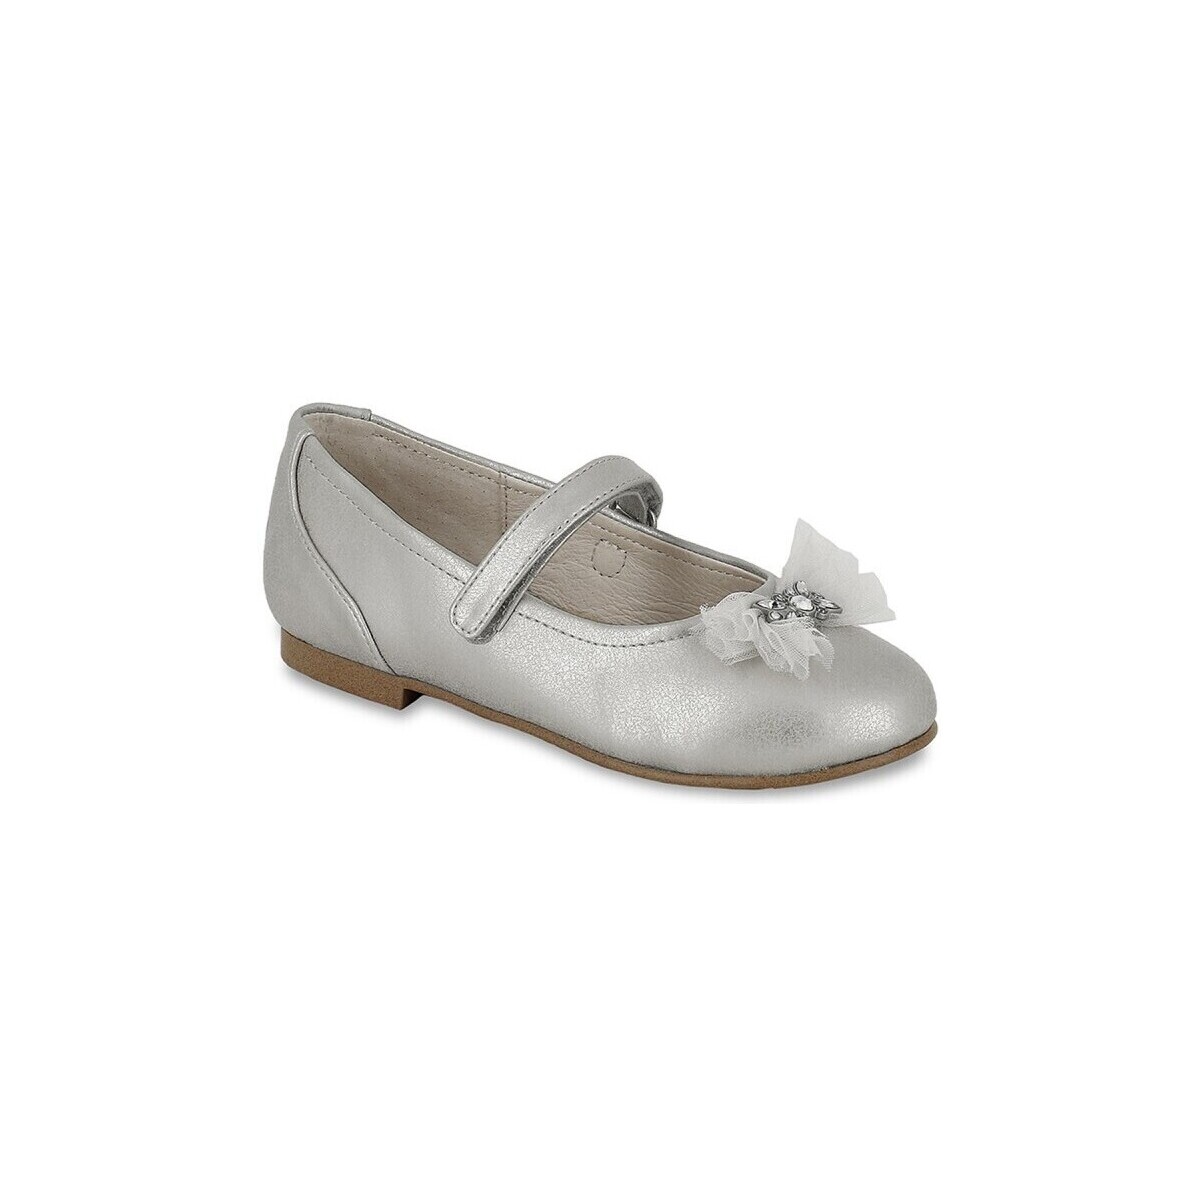 Obuća Djevojčica Balerinke i Mary Jane cipele Mayoral 25980-18 Srebrna